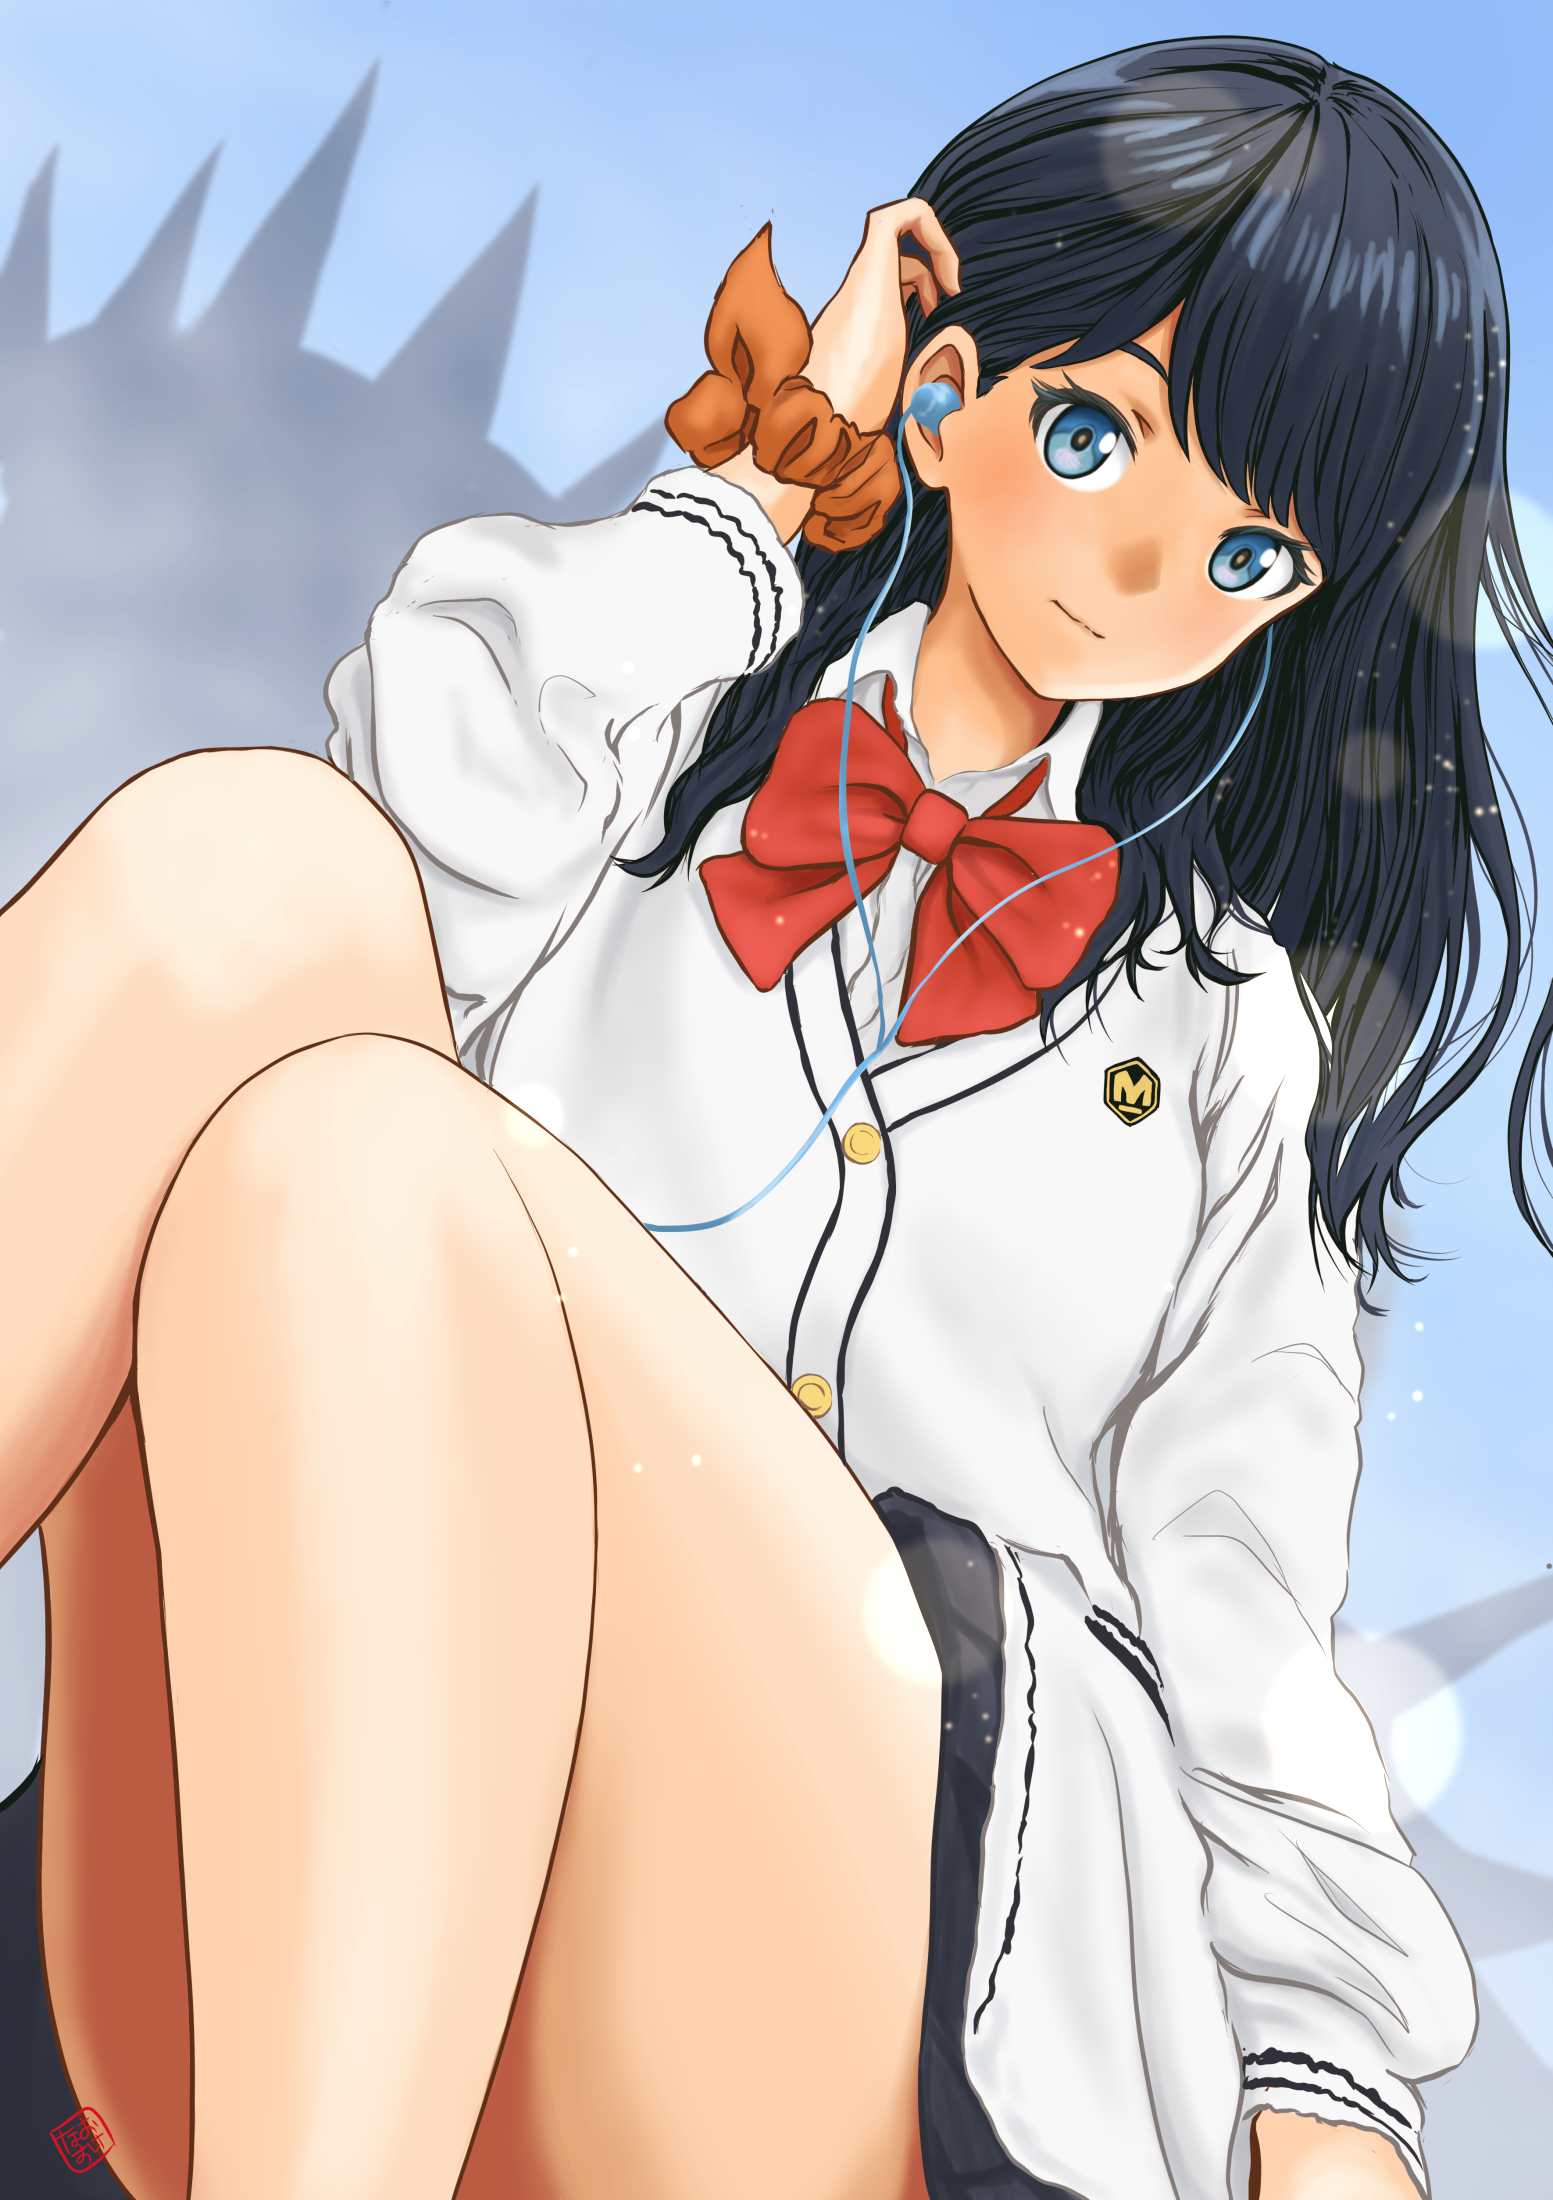 Anime 1553x2200 anime anime girls SSSS.GRIDMAN Takarada Rikka long hair black hair artwork digital art fan art